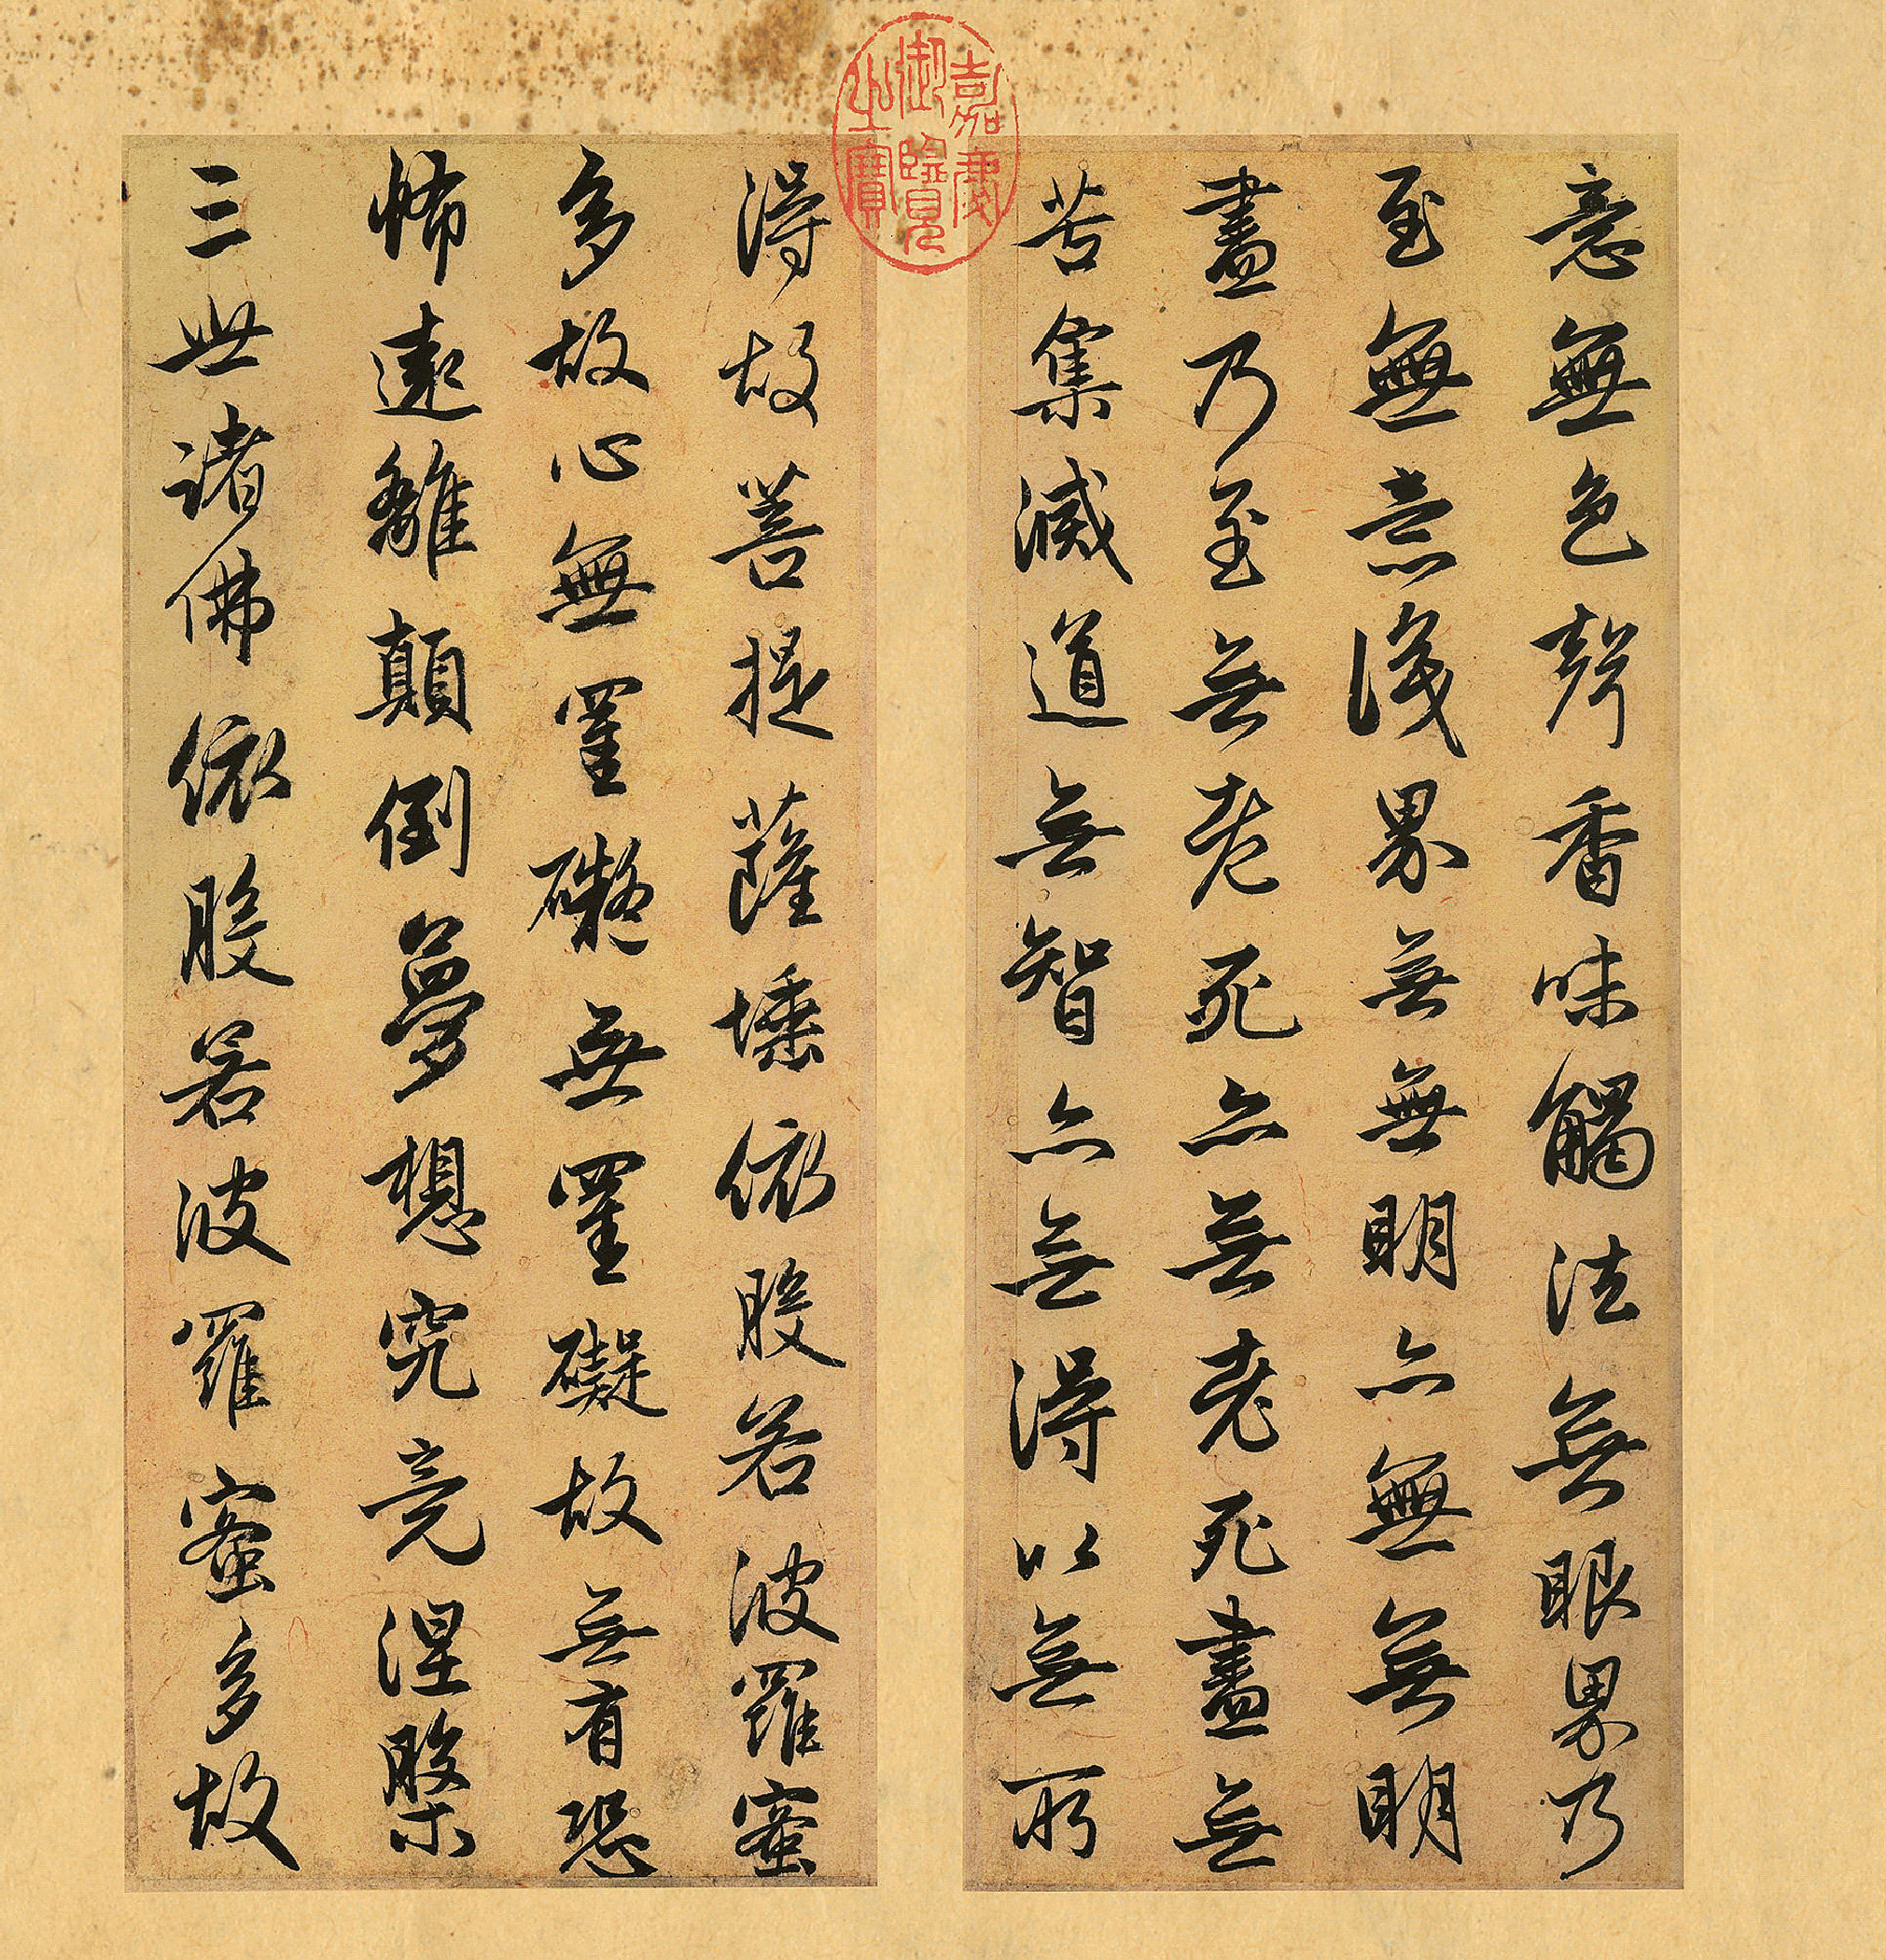 赵孟頫行书《心经册》,在写经史上是一个创例